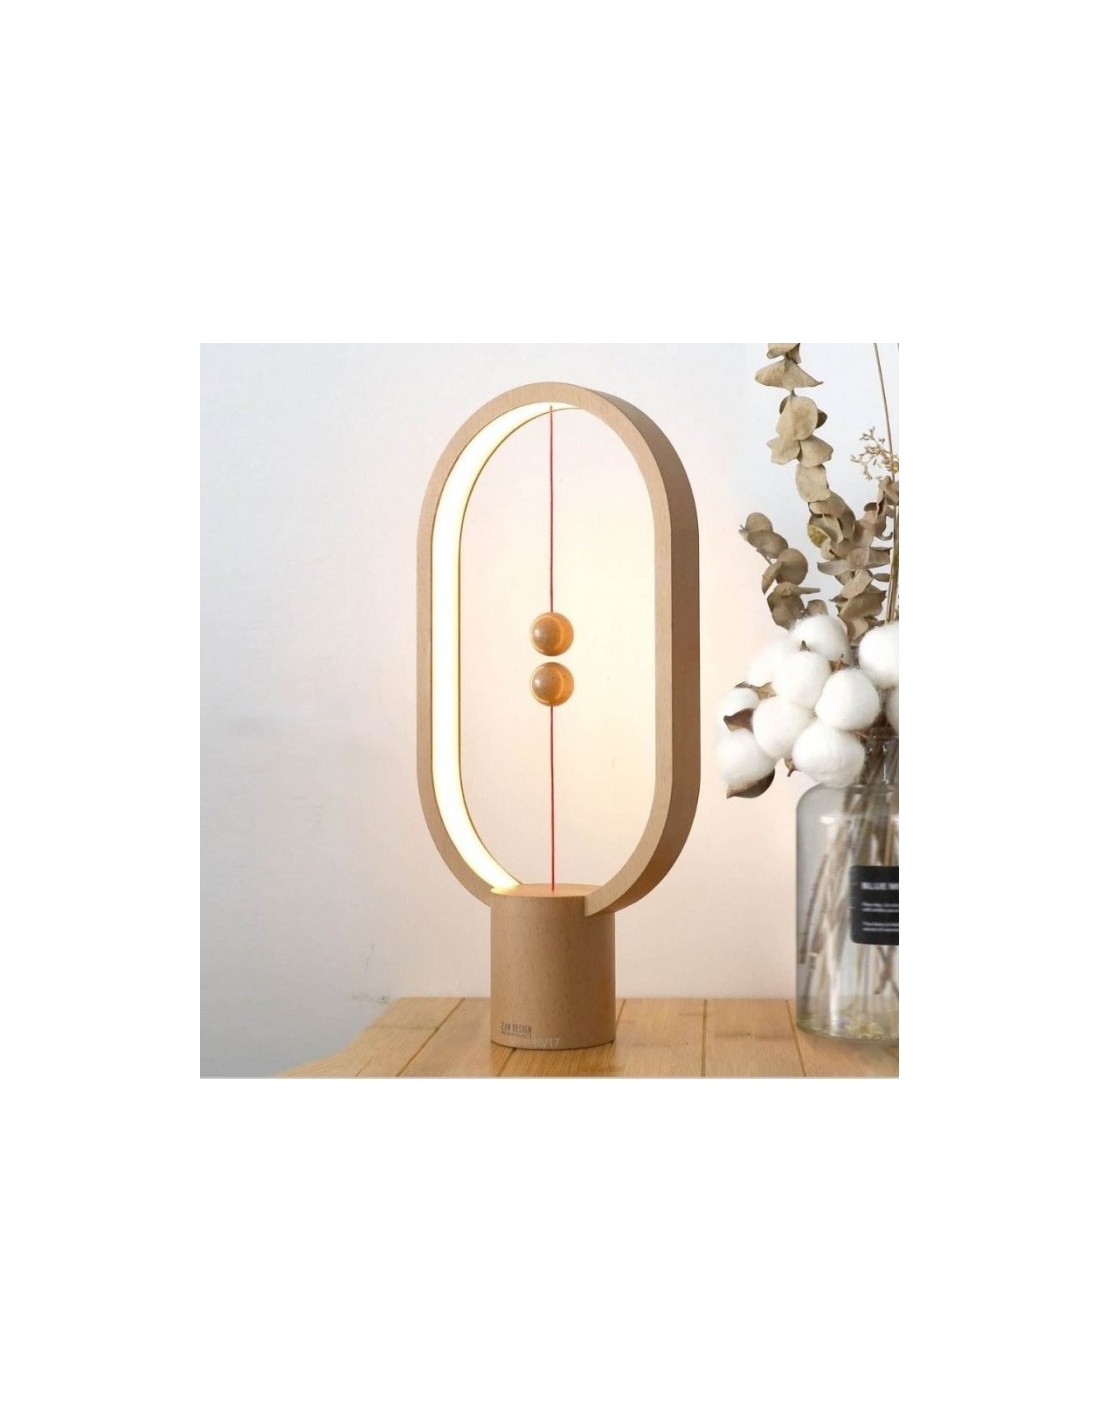 Lampe LED Heng en bois avec interrupteur magnétique - Allocacoc